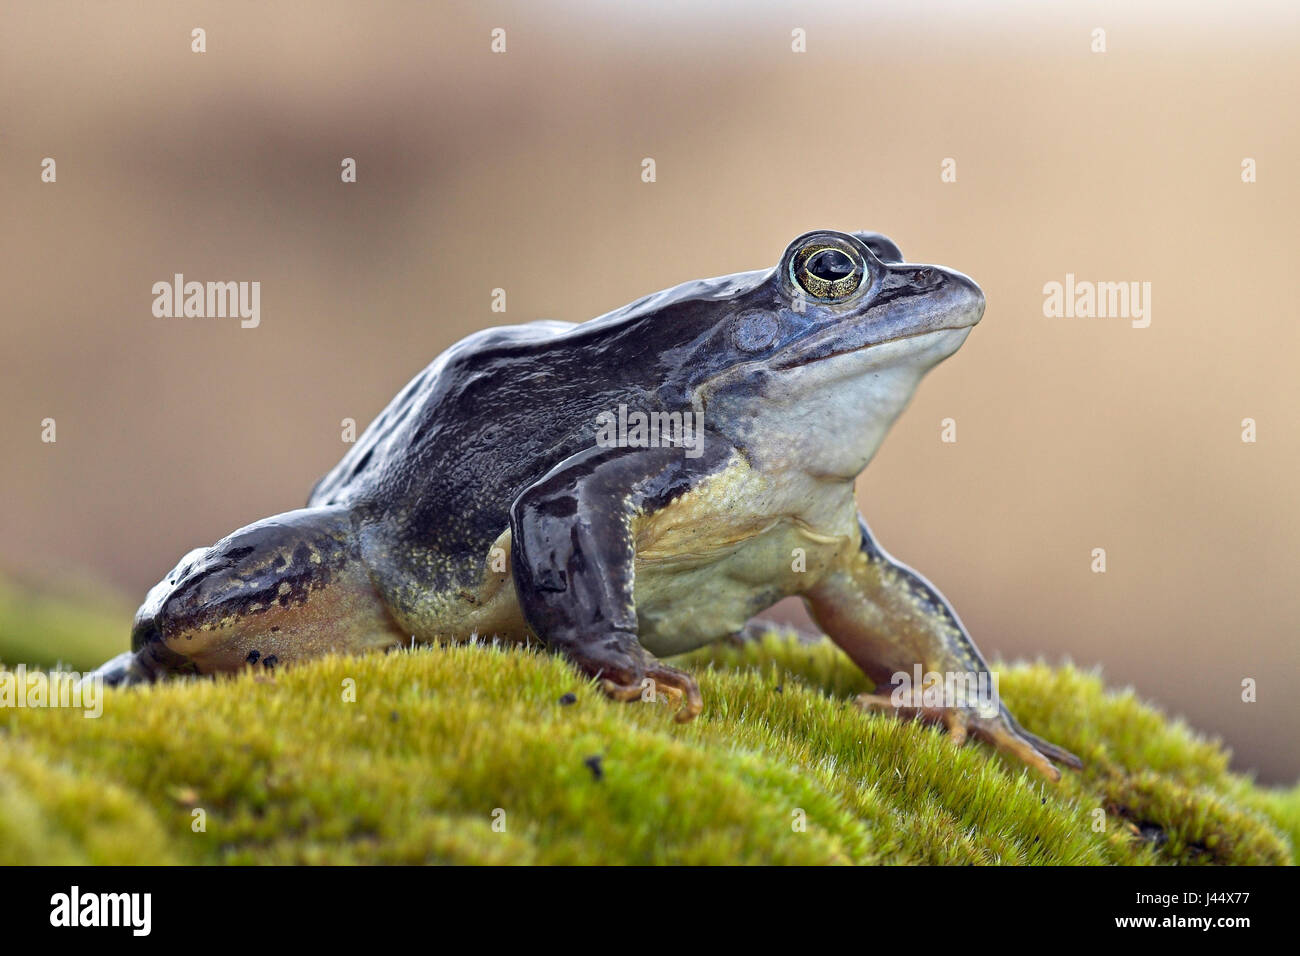 Maschio blu moor frog su terra Foto Stock